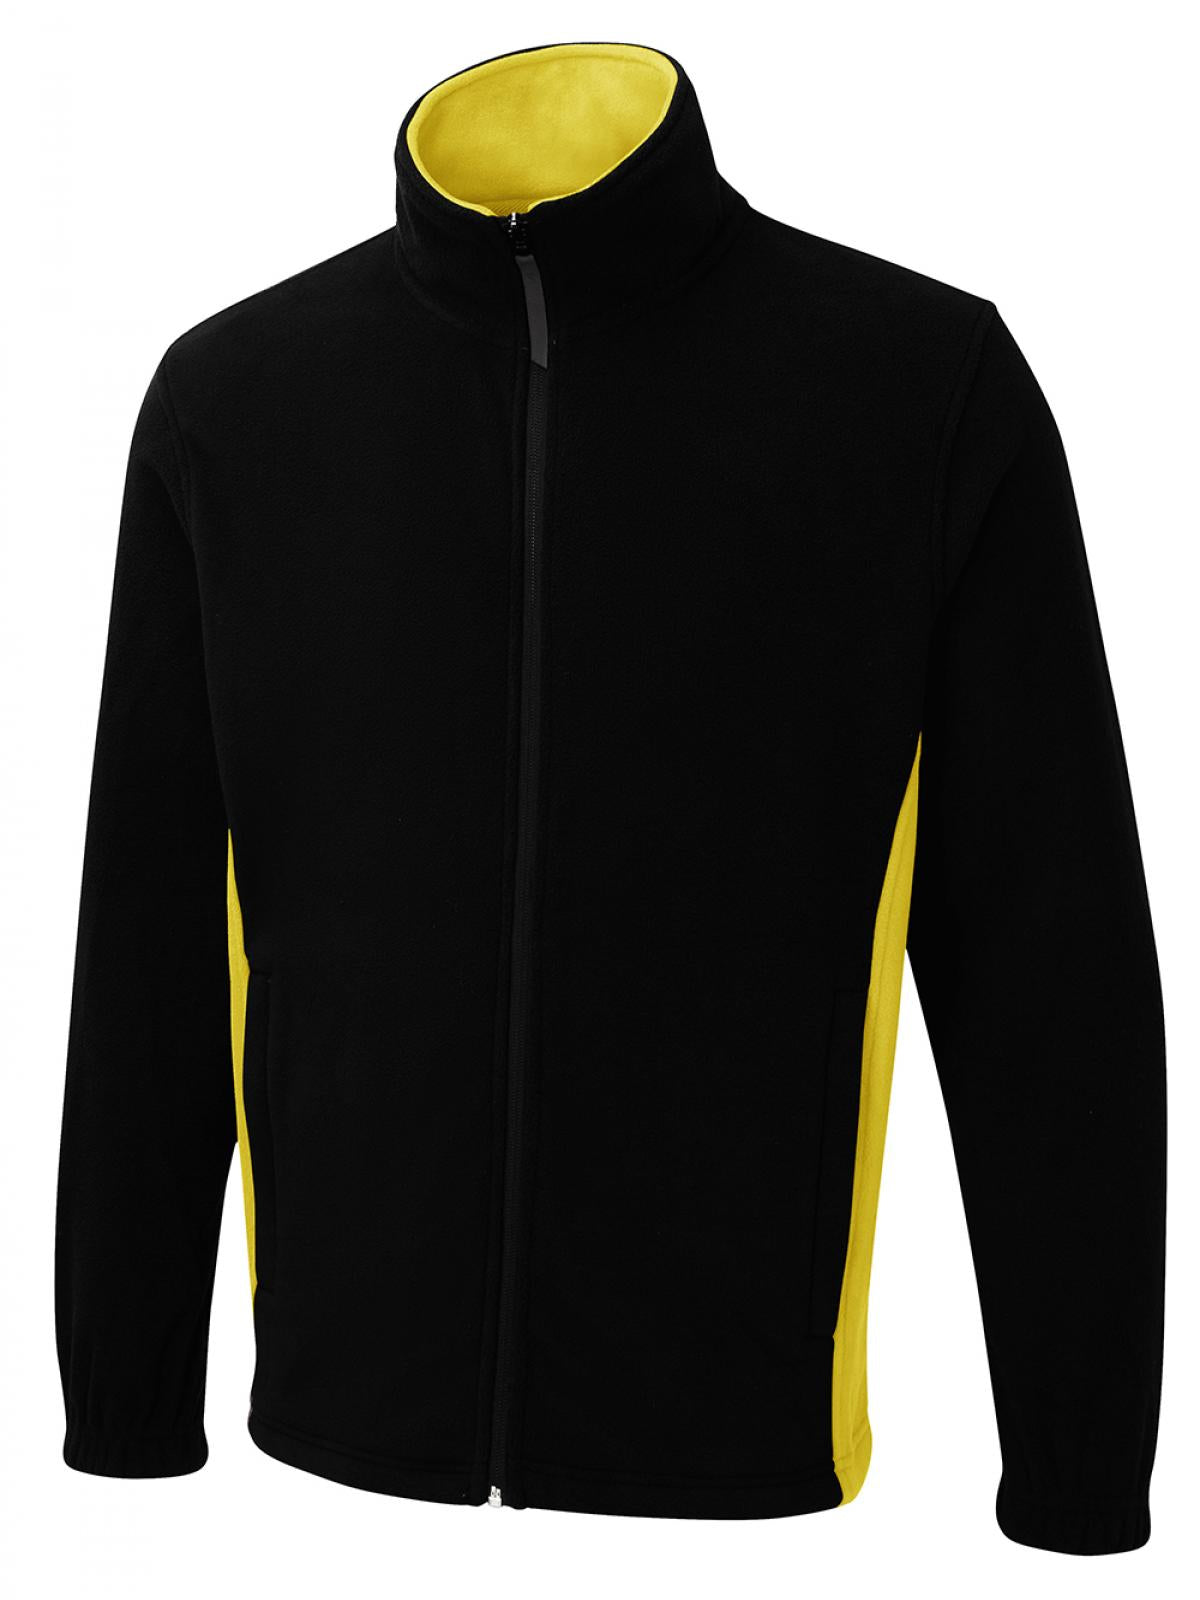 Uneek Two Tone Full Zip Fleece Jacket UC617 - Black/Yellow